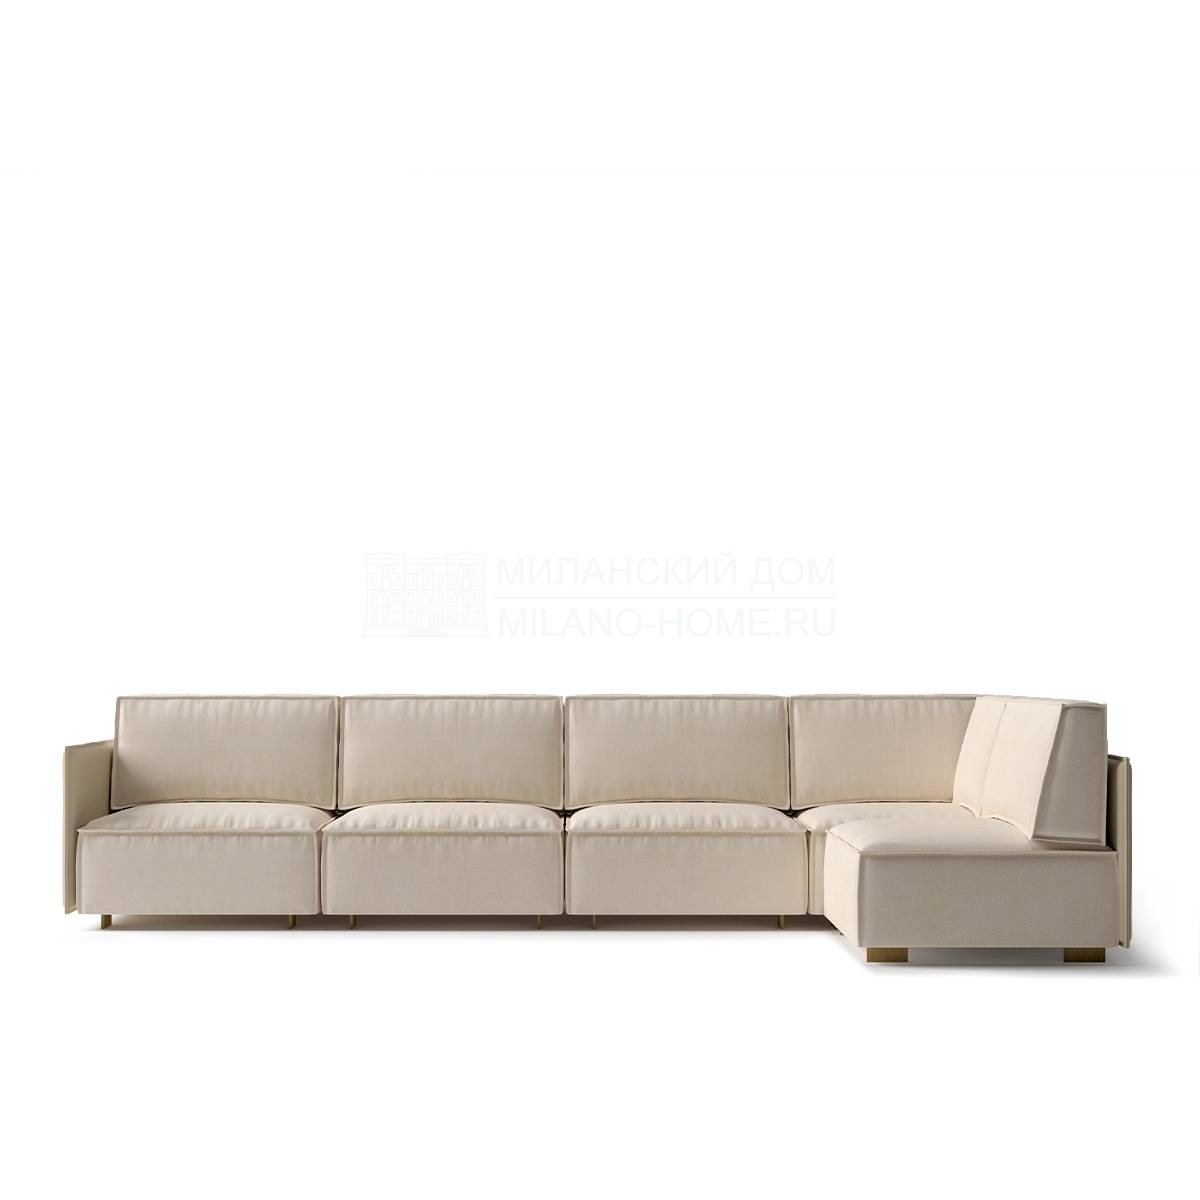 Угловой диван Tempo corner sofa из Испании фабрики COLECCION ALEXANDRA